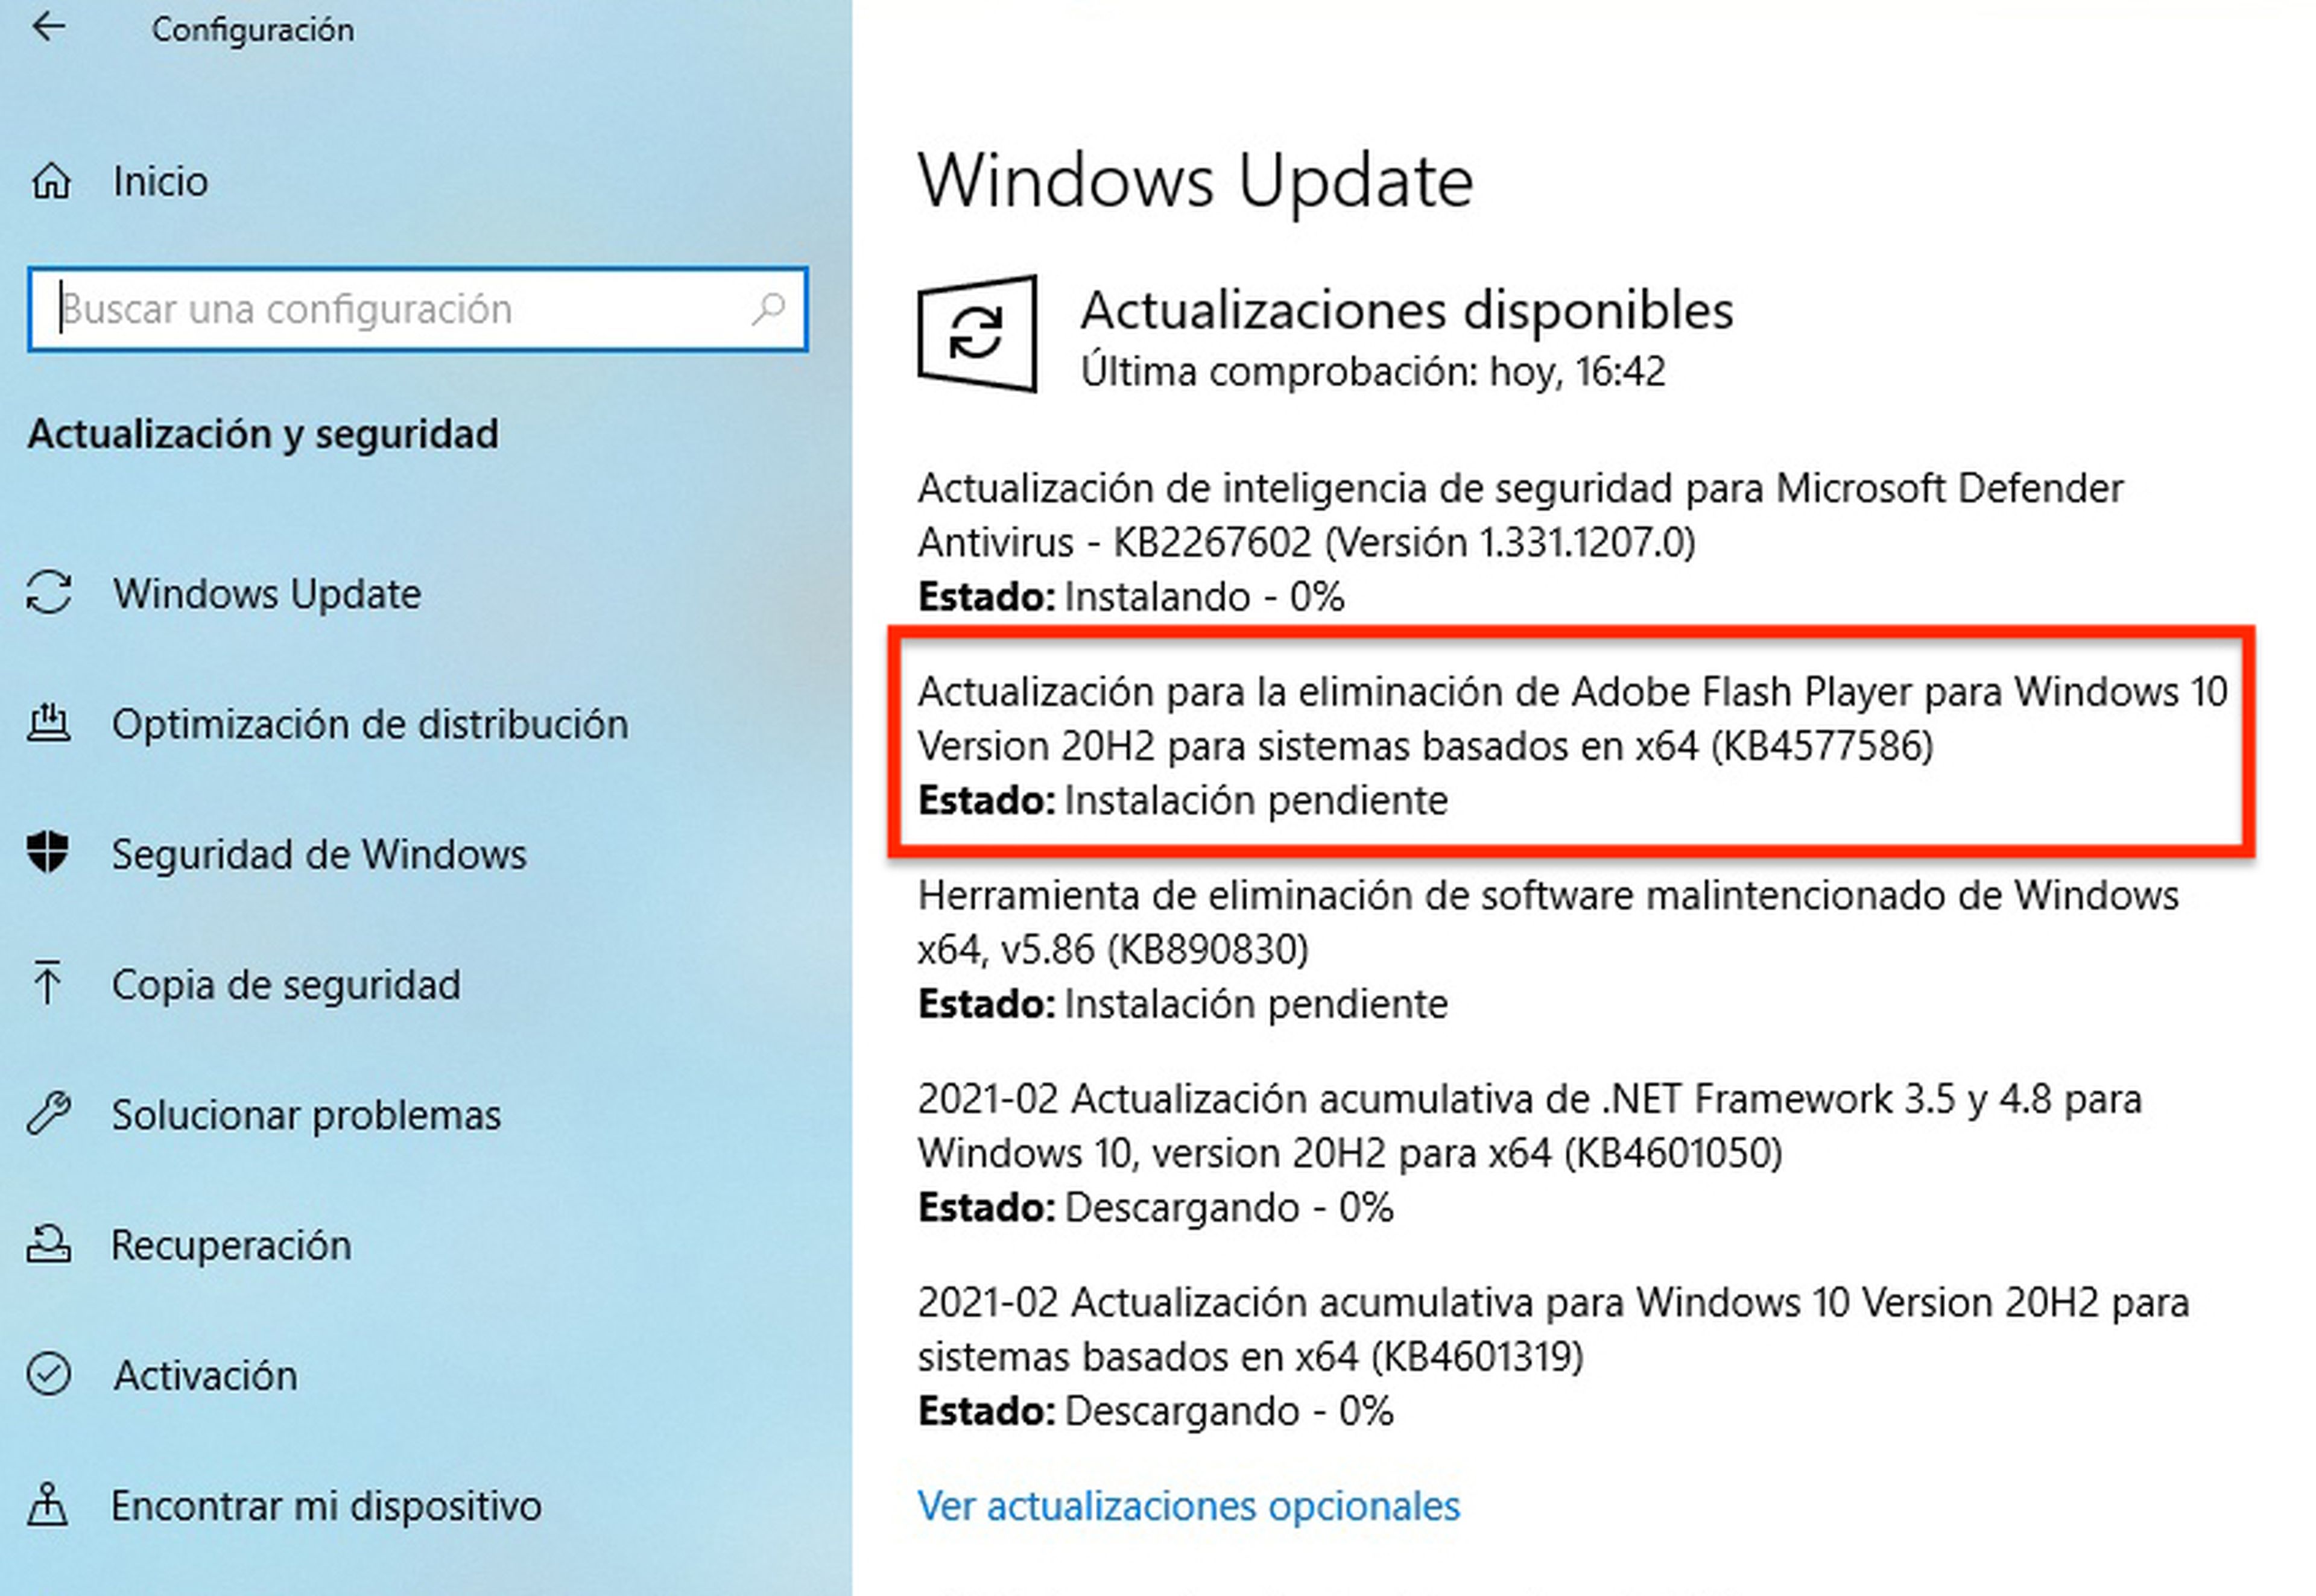 Actualización de Windows 10 para eliminar Adobe Flash Player